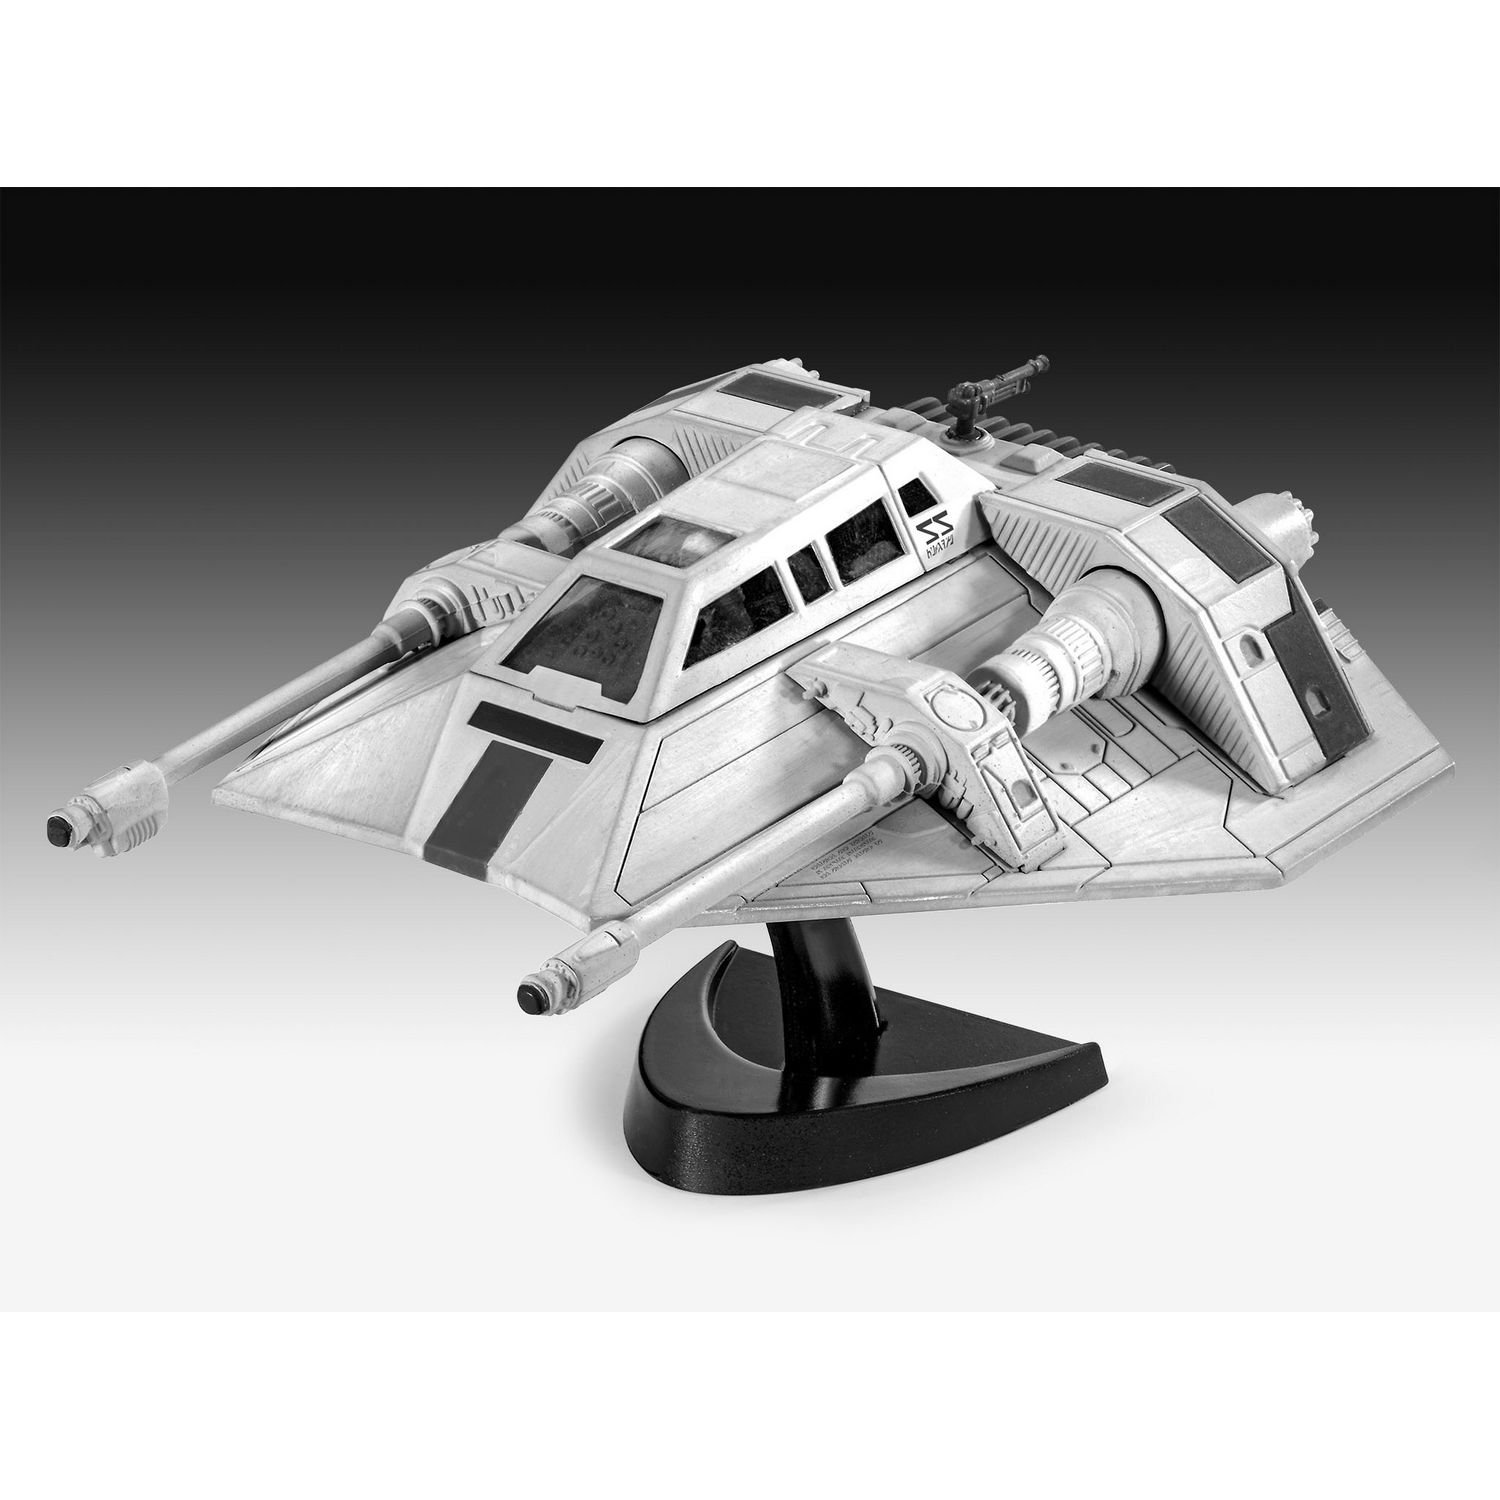 Сборная модель Revell Космический корабль Snowspeeder, уровень 3, масштаб 1:52, 23 детали (RVL-03604) - фото 4